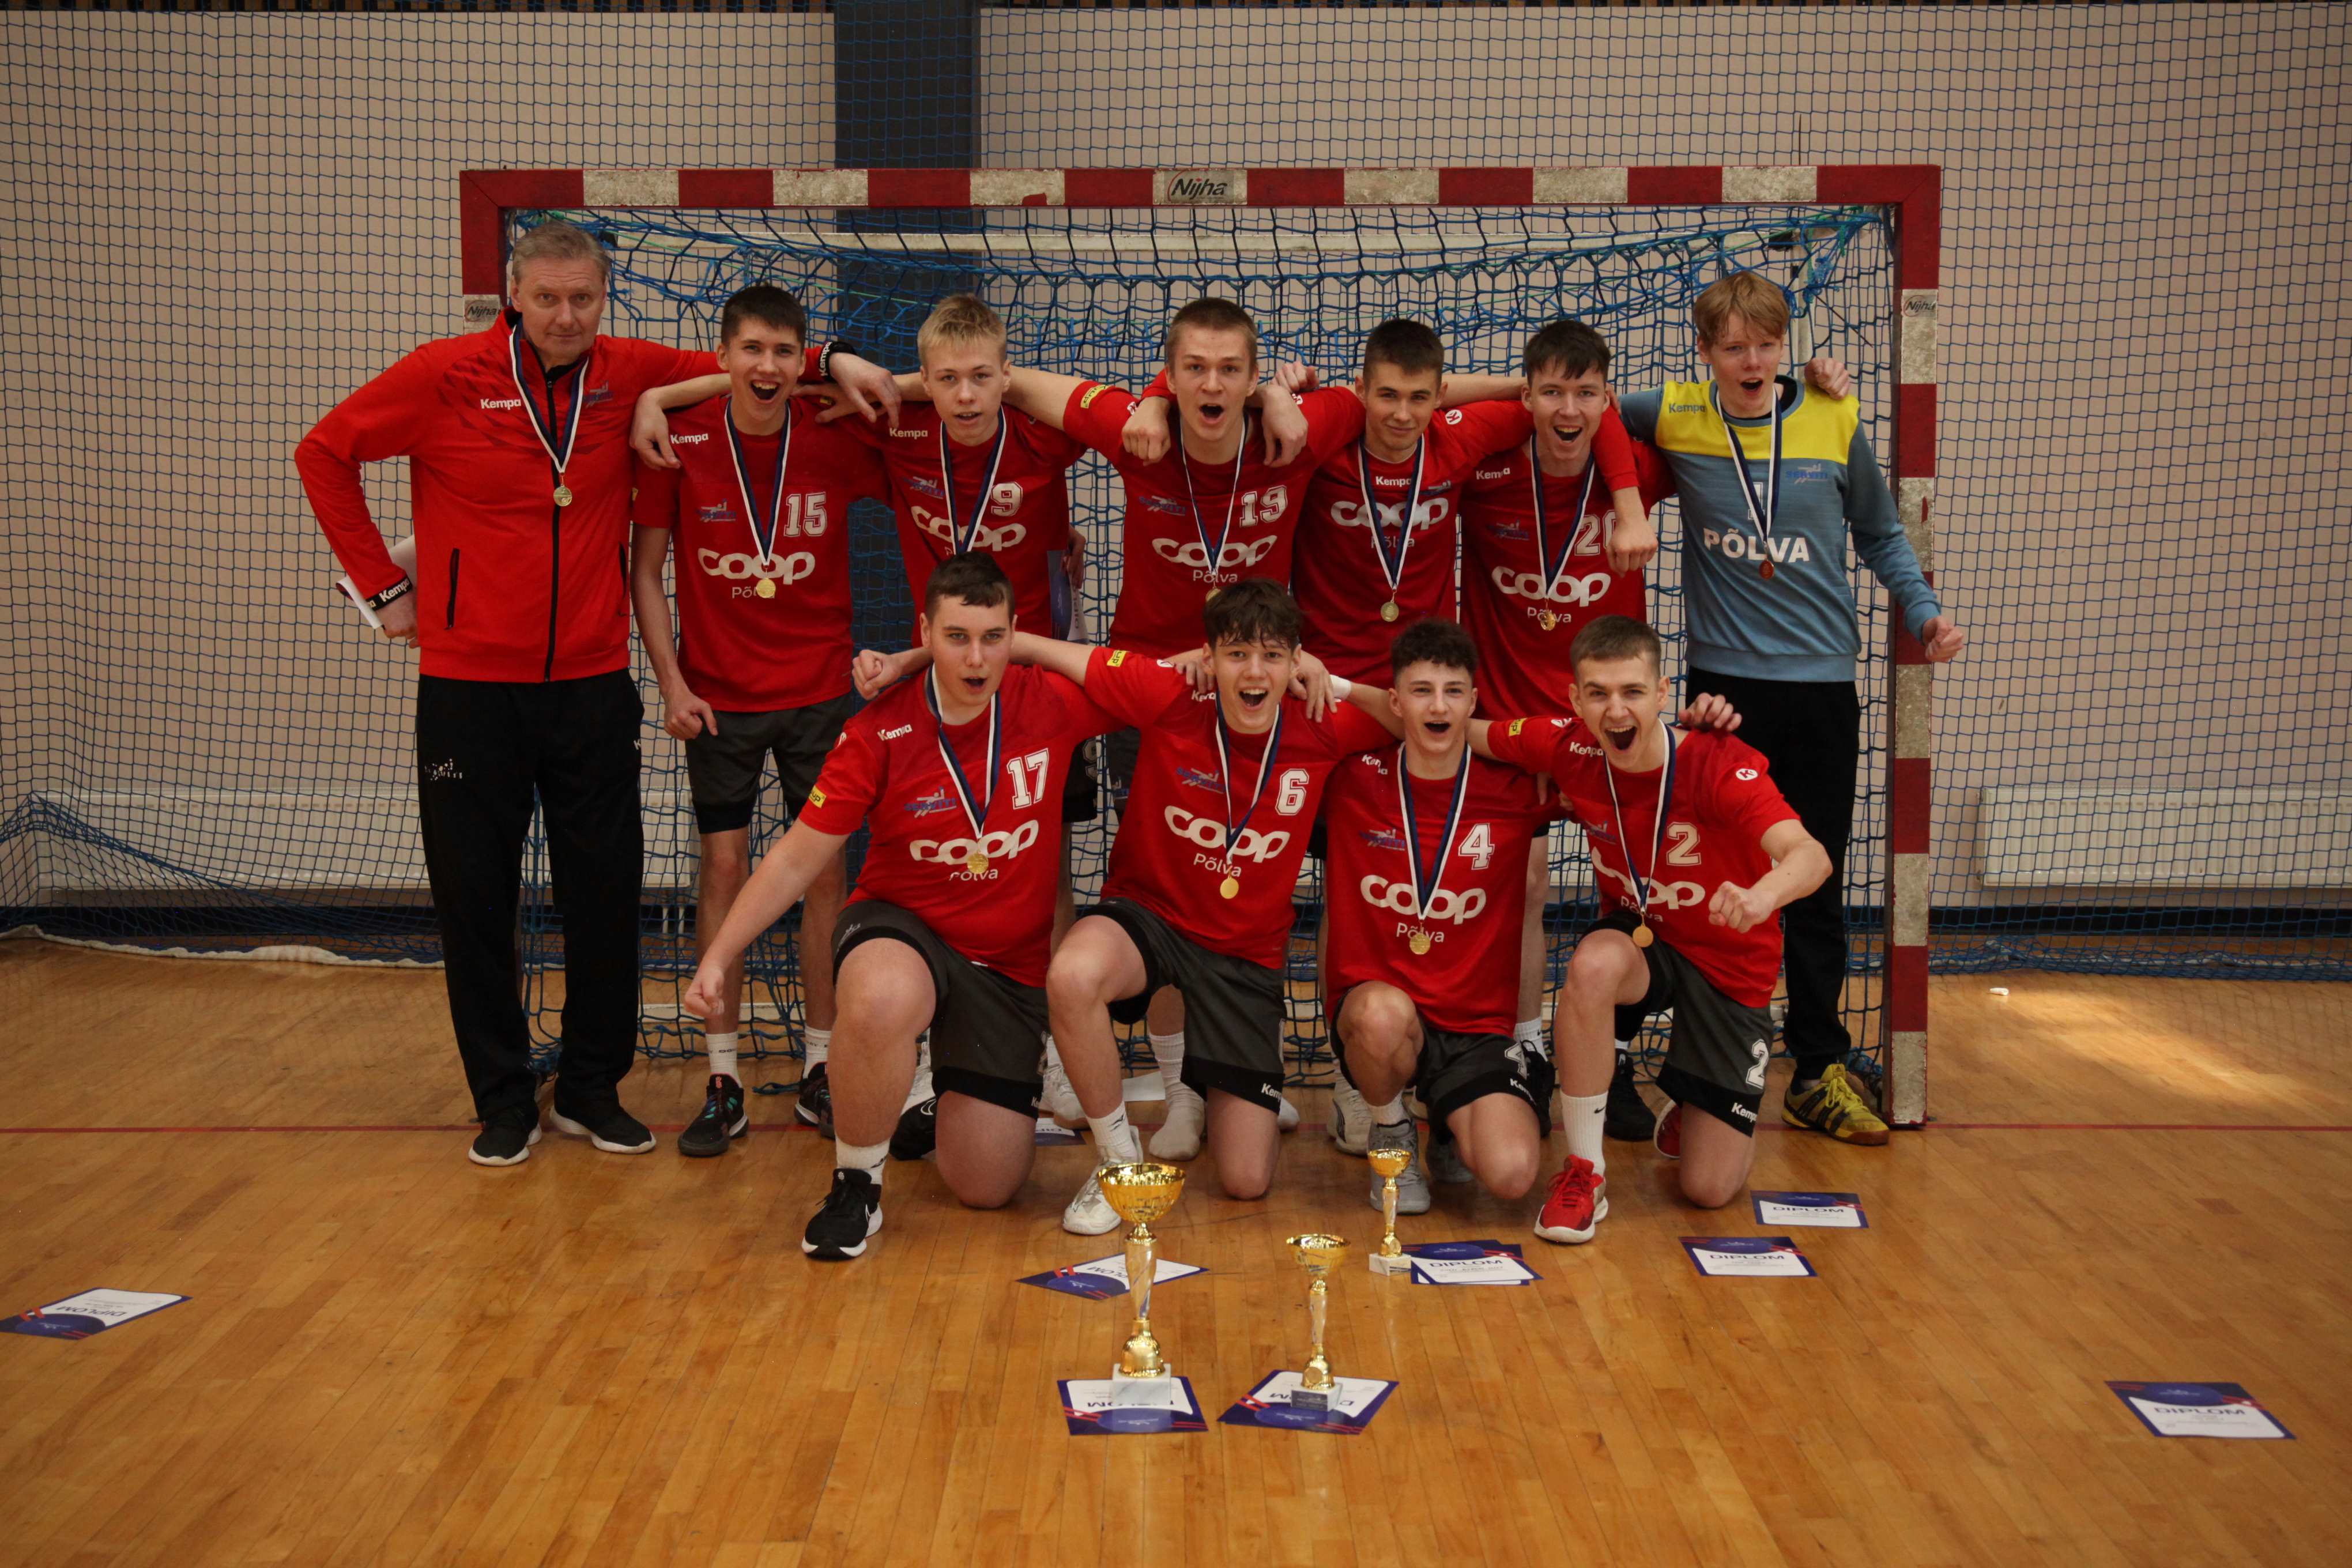 Põlva Käsipalliklubi/Põlva Spordikooli võistkond on 2024 Eesti meister noormeeste B-vanuseklassi käsipallis